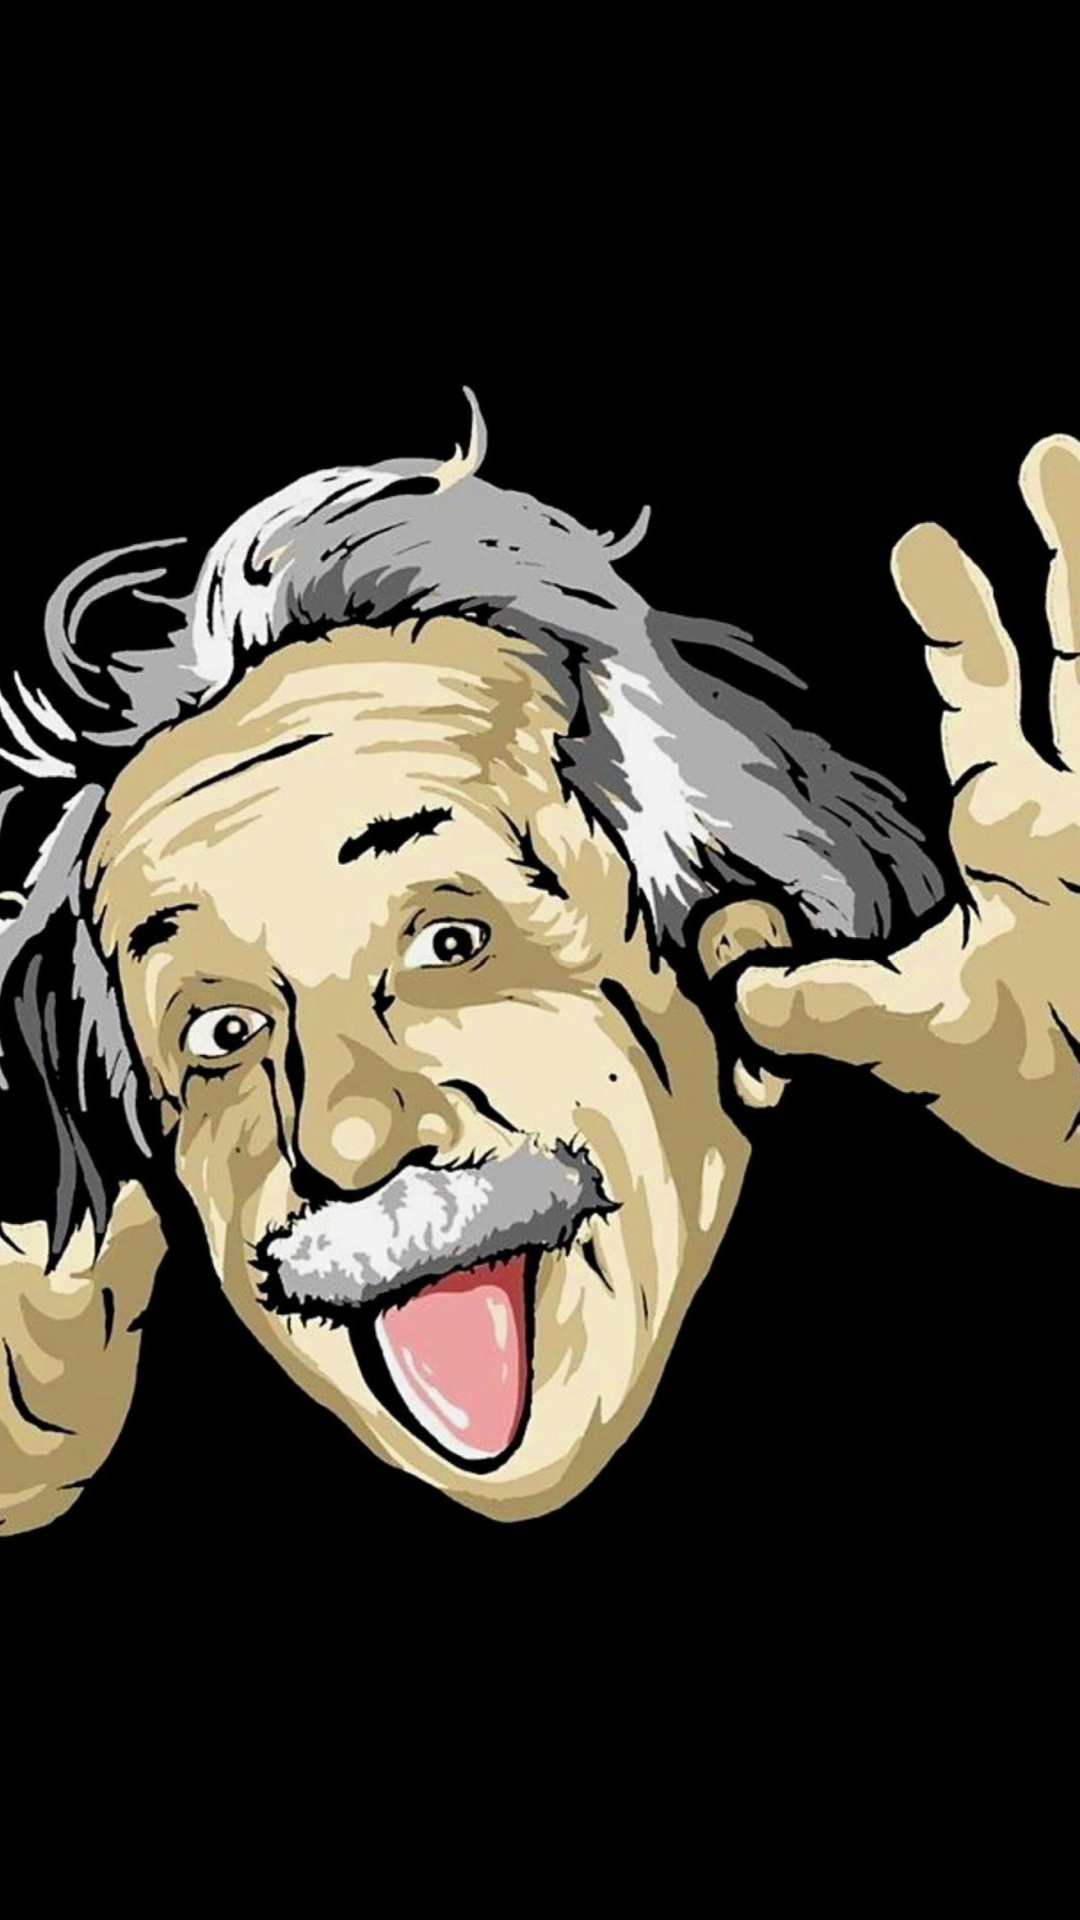 Funny Albert Einstein screenshot #1 1080x1920